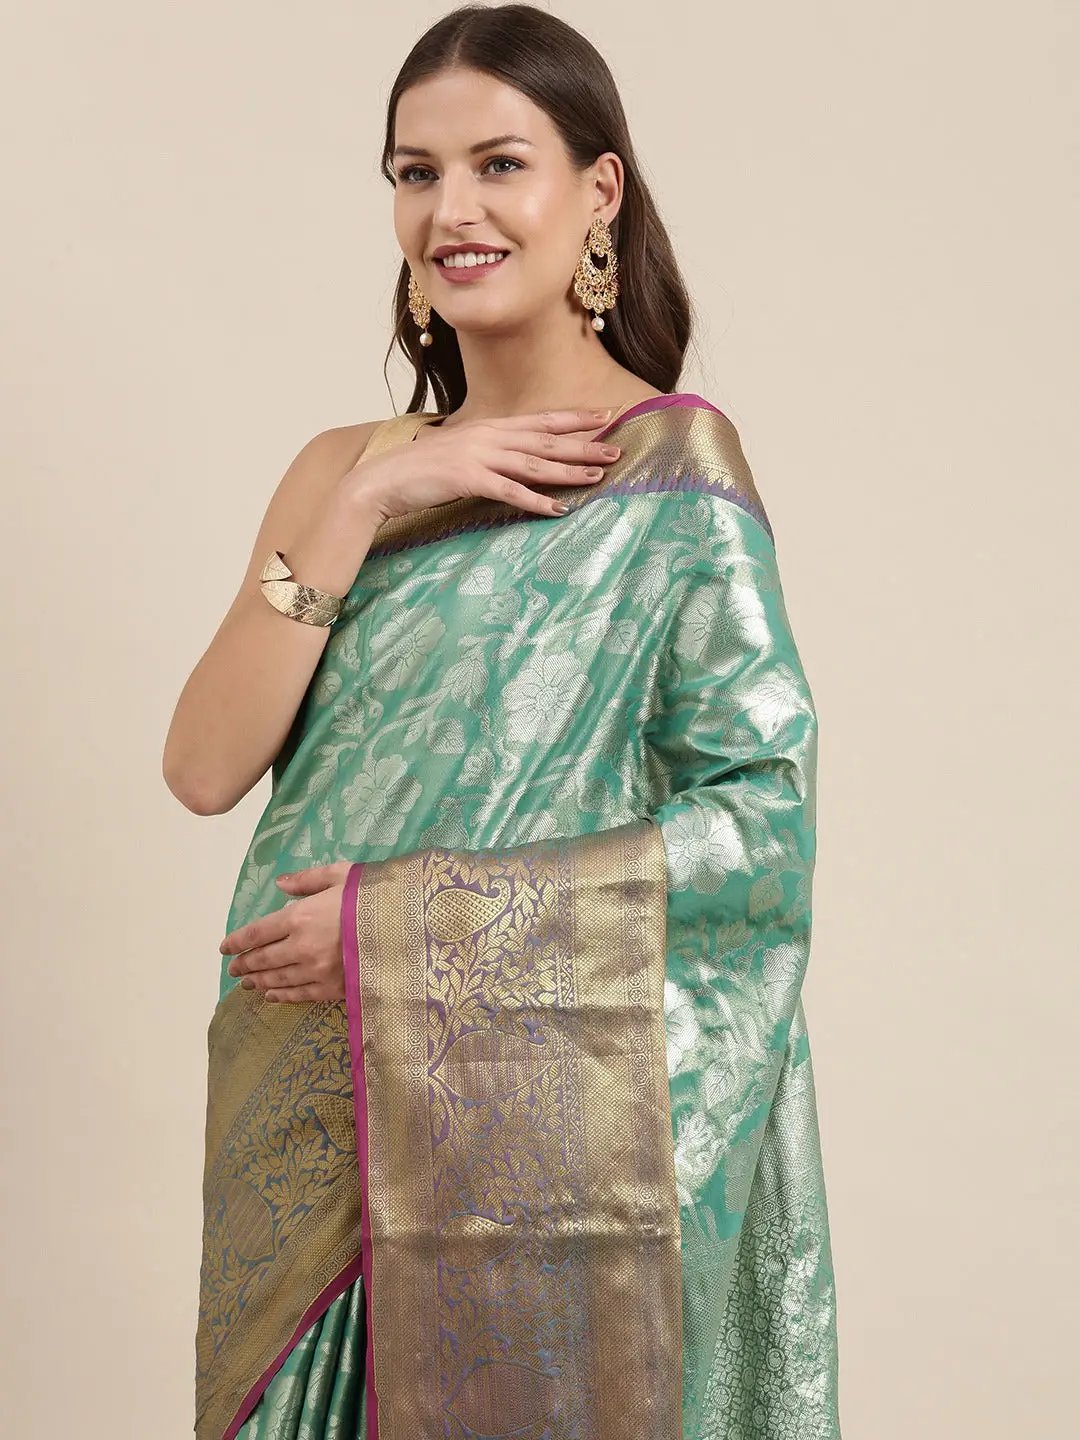 Premium One Gram Gold Tissue Silk Saree Collection